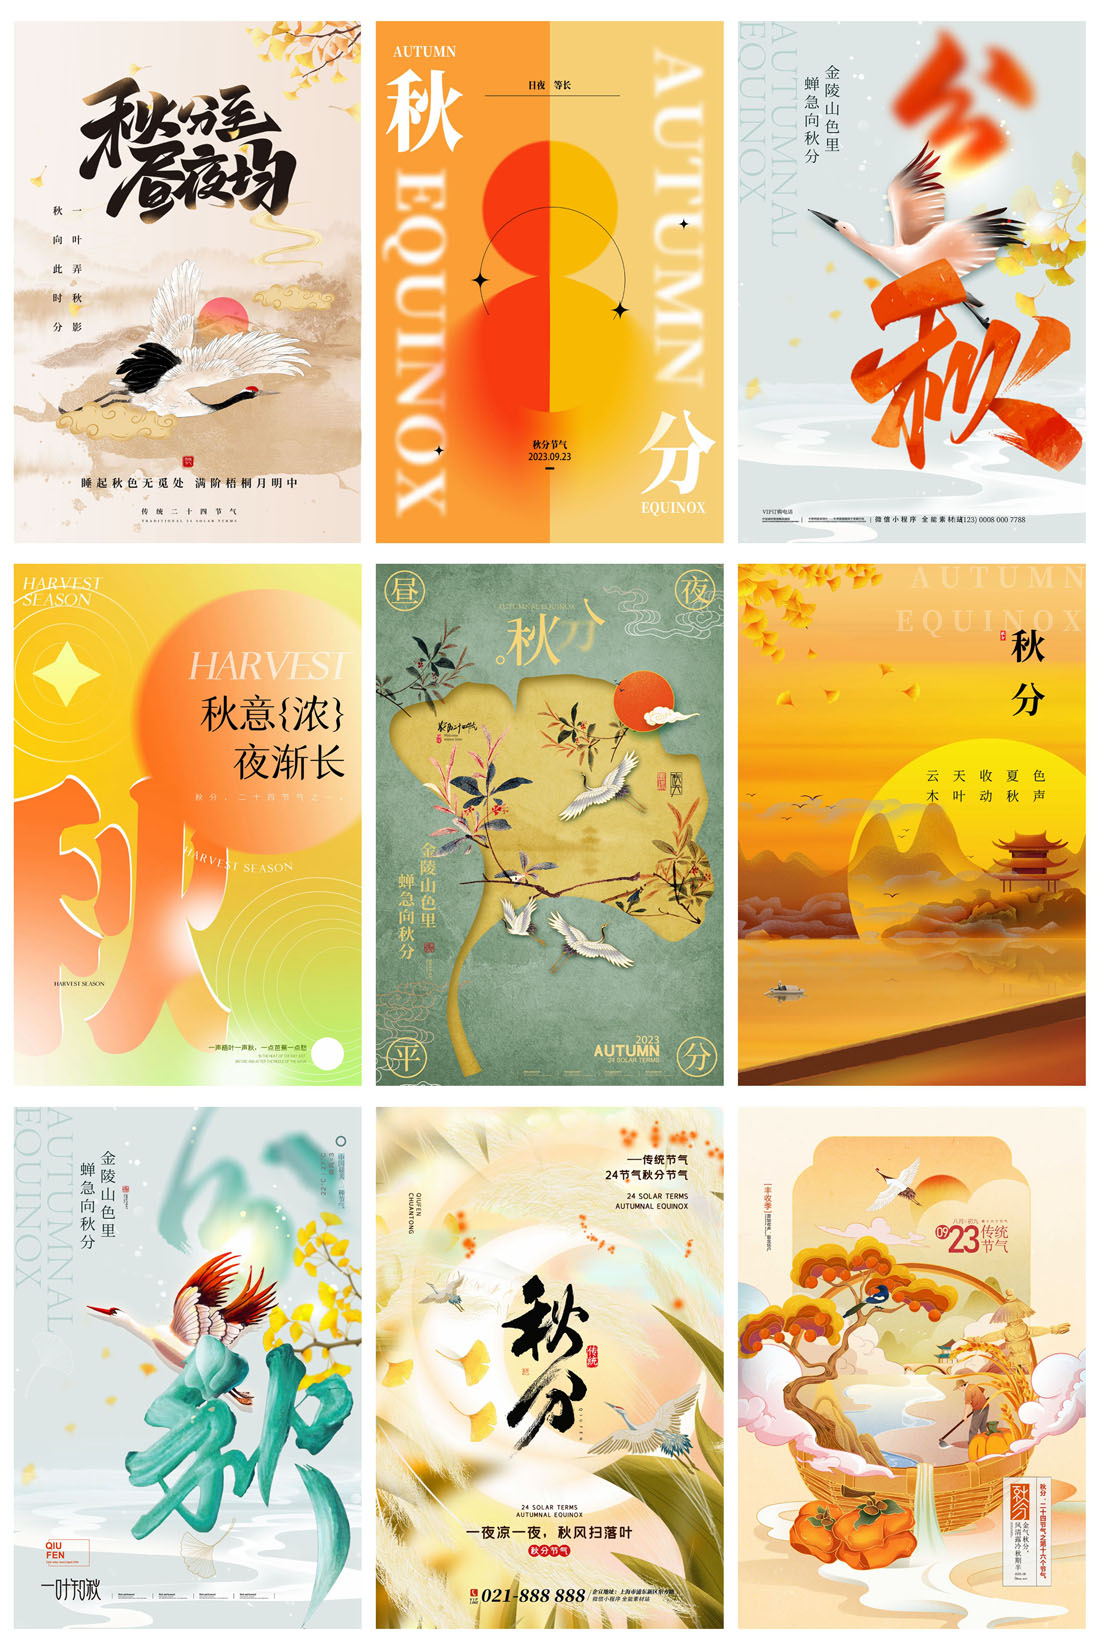 52款中国传统节日二十四节气秋分节日宣传海报PSD模板 设计素材 第11张